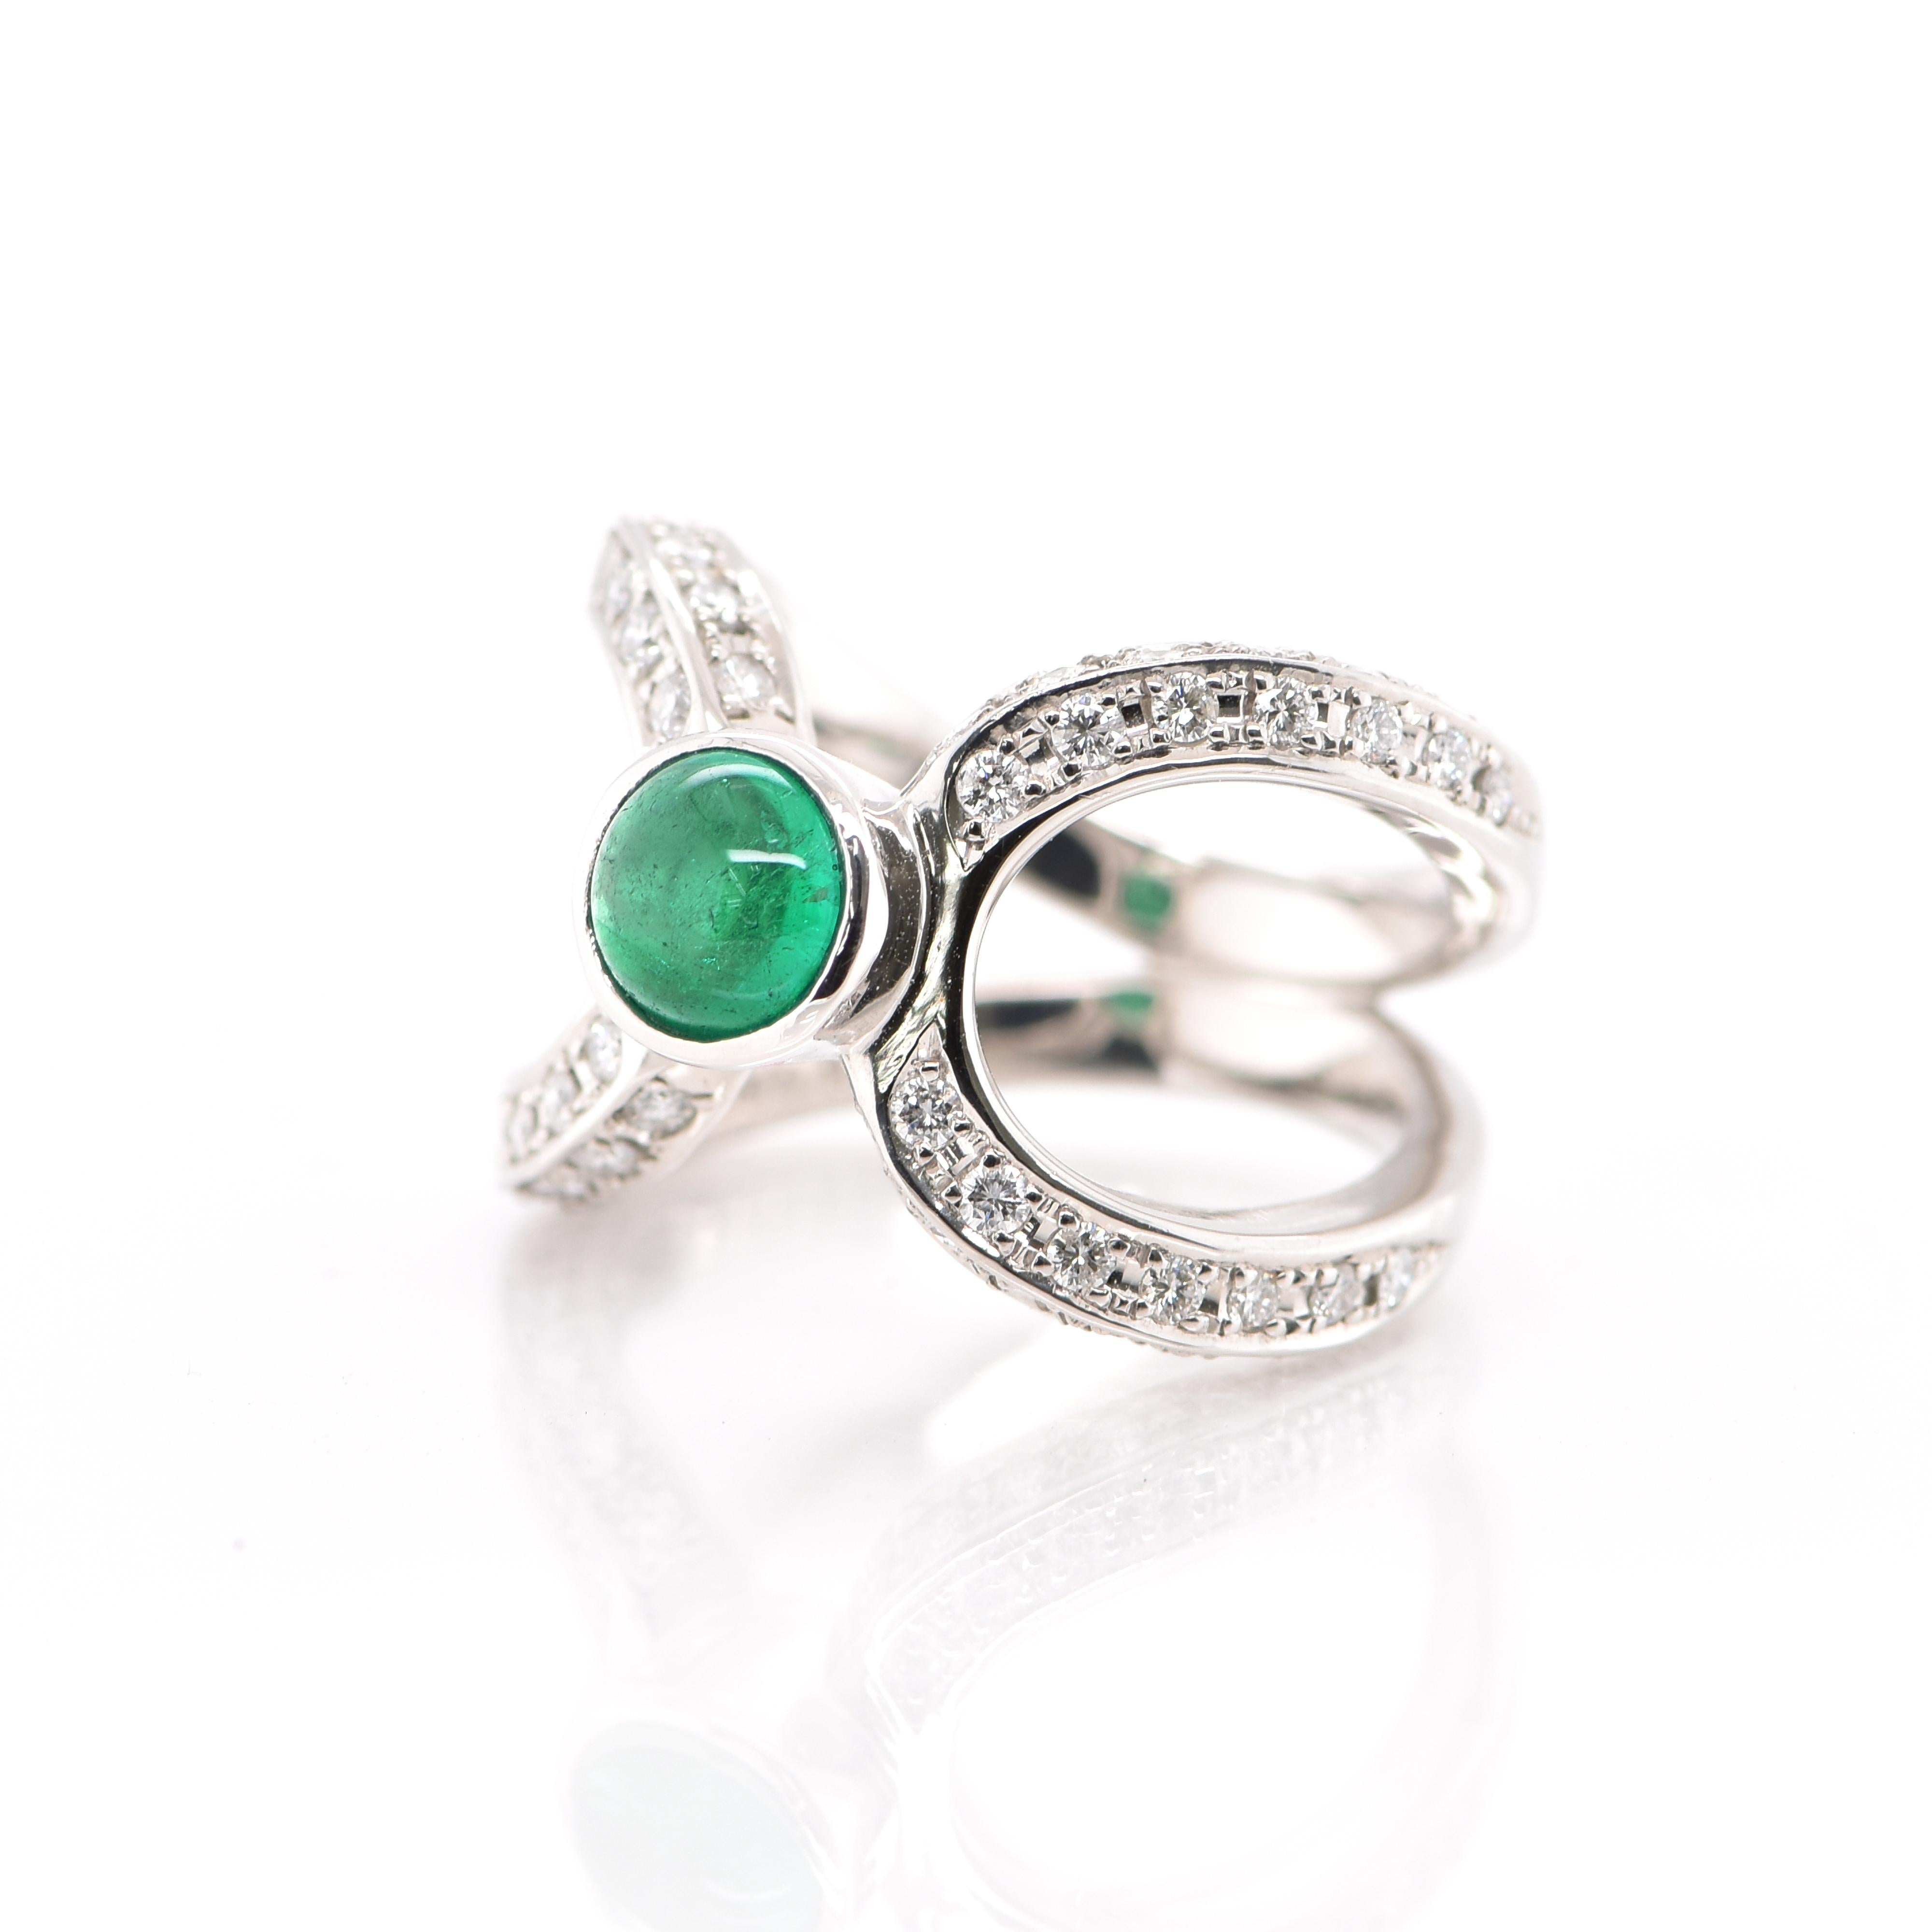 Ein atemberaubender Ring mit einem 0,86 Karat Smaragd-Cabochon und 0,68 Karat Diamant-Akzenten in Platin gefasst. Seit Tausenden von Jahren bewundern die Menschen das Grün des Smaragds. Smaragde werden seit jeher mit den üppigsten Landschaften und